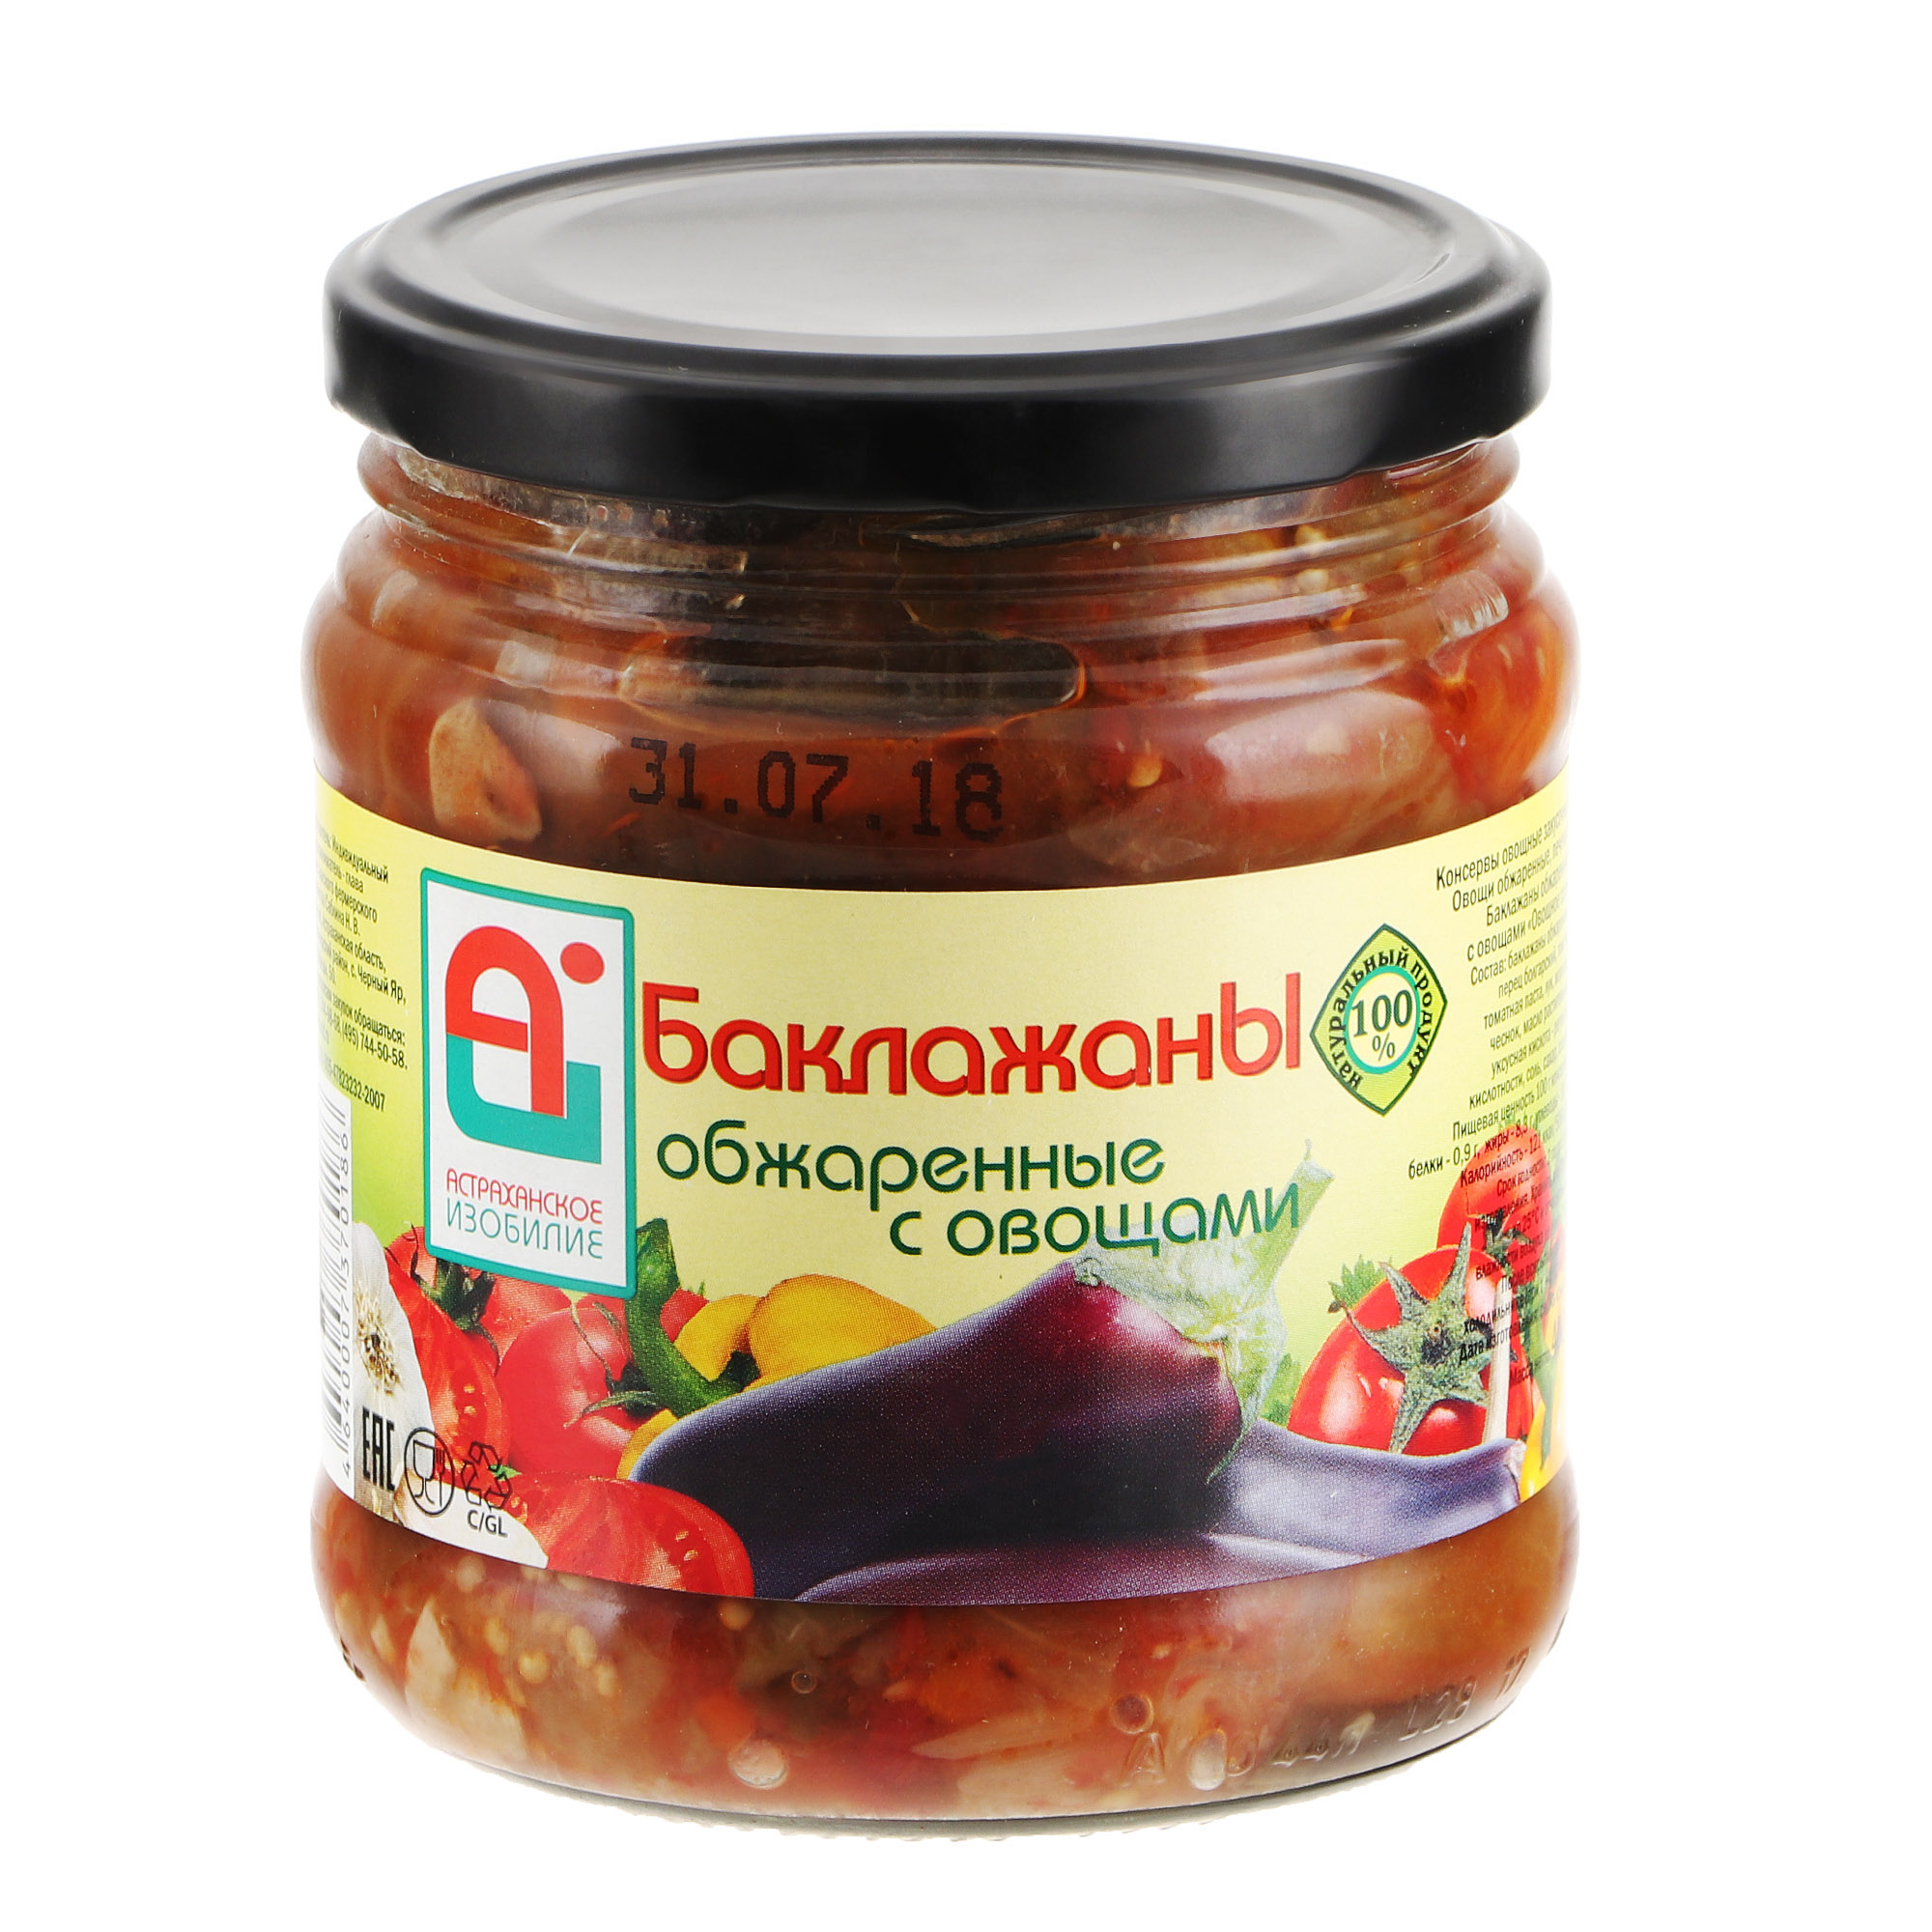 Баклажаны обжаренные Астраханское Изобилие с овощами 500 г томаты консервированные астраханское изобилие 1 л